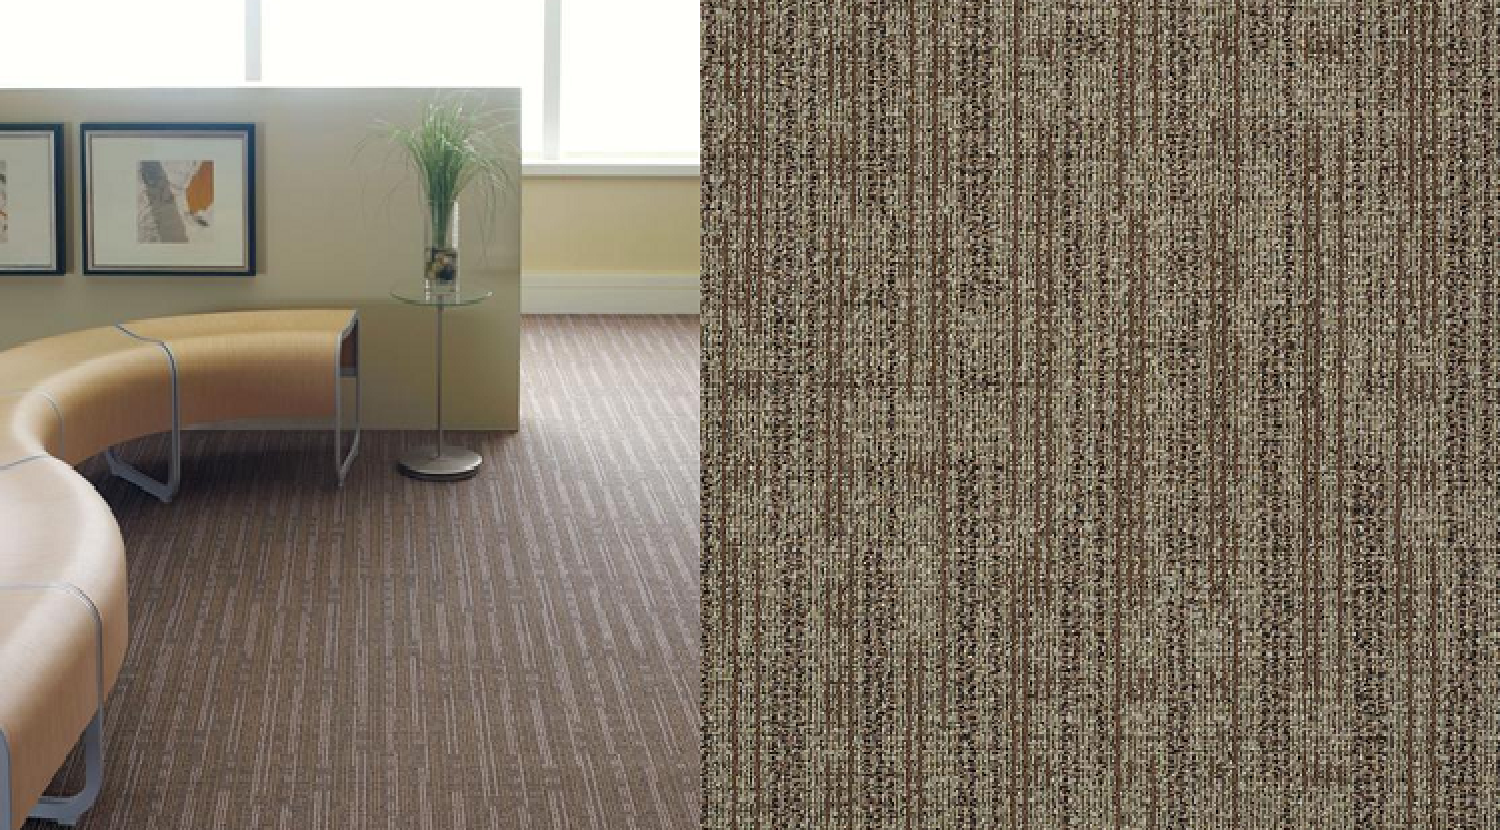 Queen Philadelphia Commercial Carpet Graphic Office Interiors Ltd